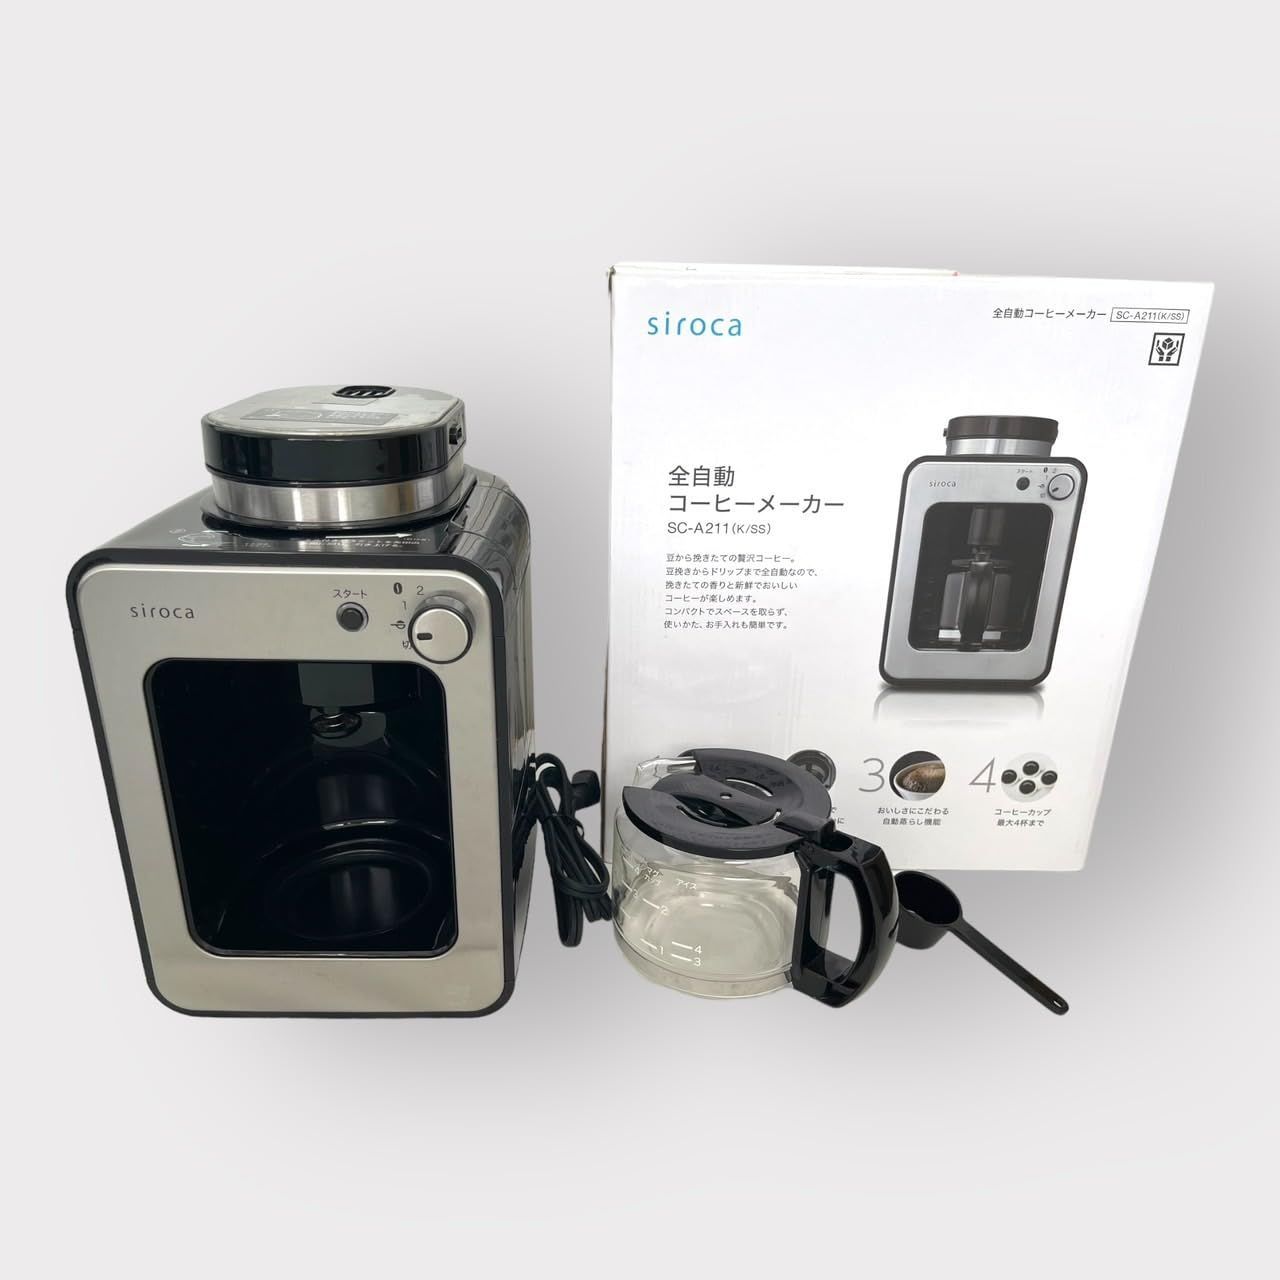 シロカ 全自動コーヒーメーカー アイスコーヒー対応 ミル2段階 豆/粉両